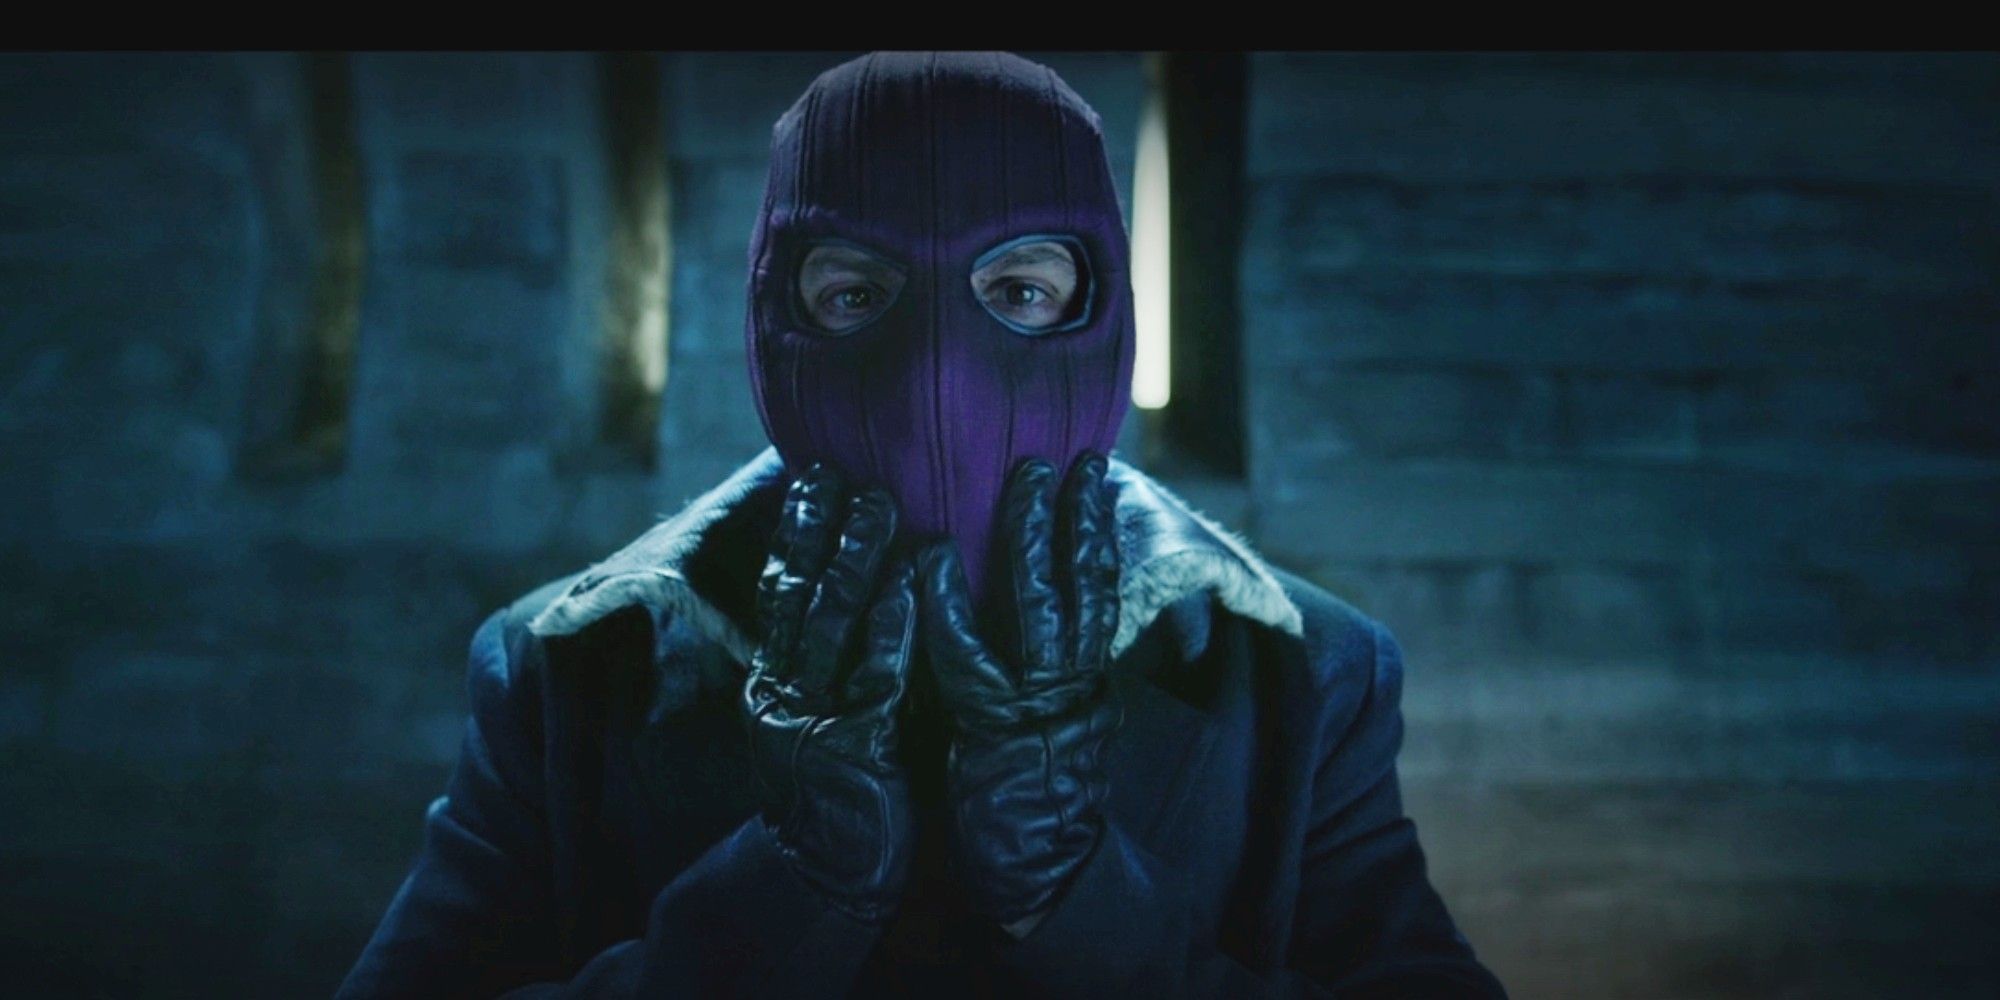 Baron Zemo wears his purple mask